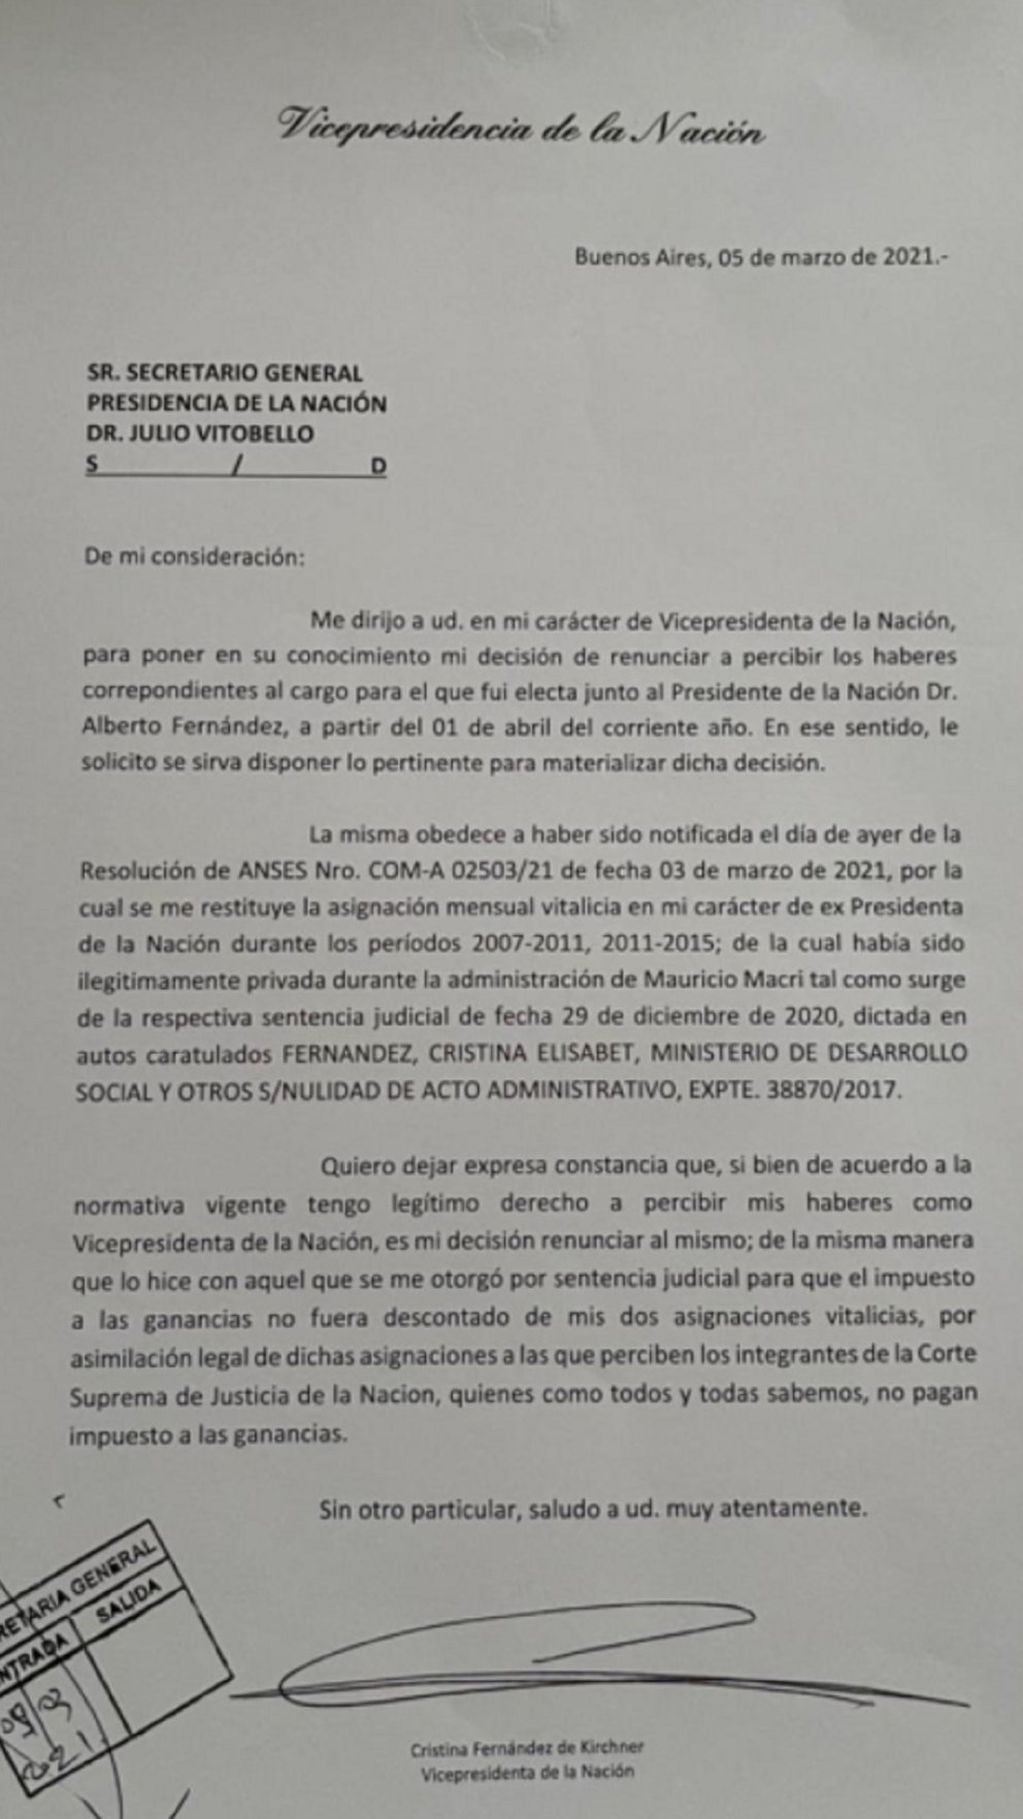 Cristina Fernández de Kirchner renunció a sus haberes como vicepresidenta